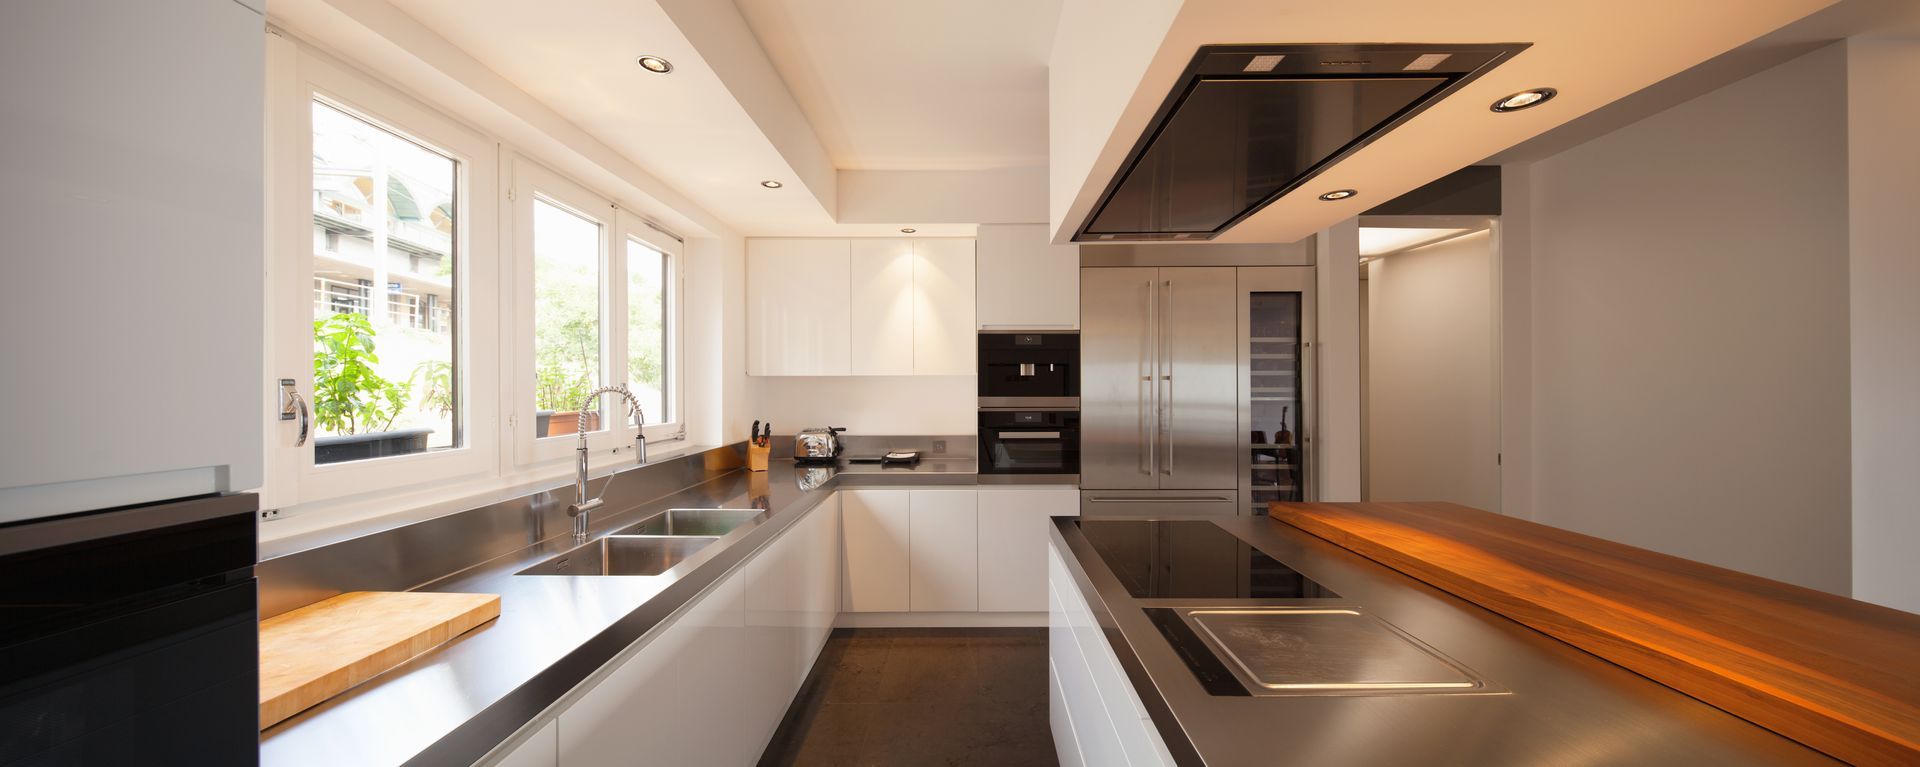 Modern kitchen in luxury flat